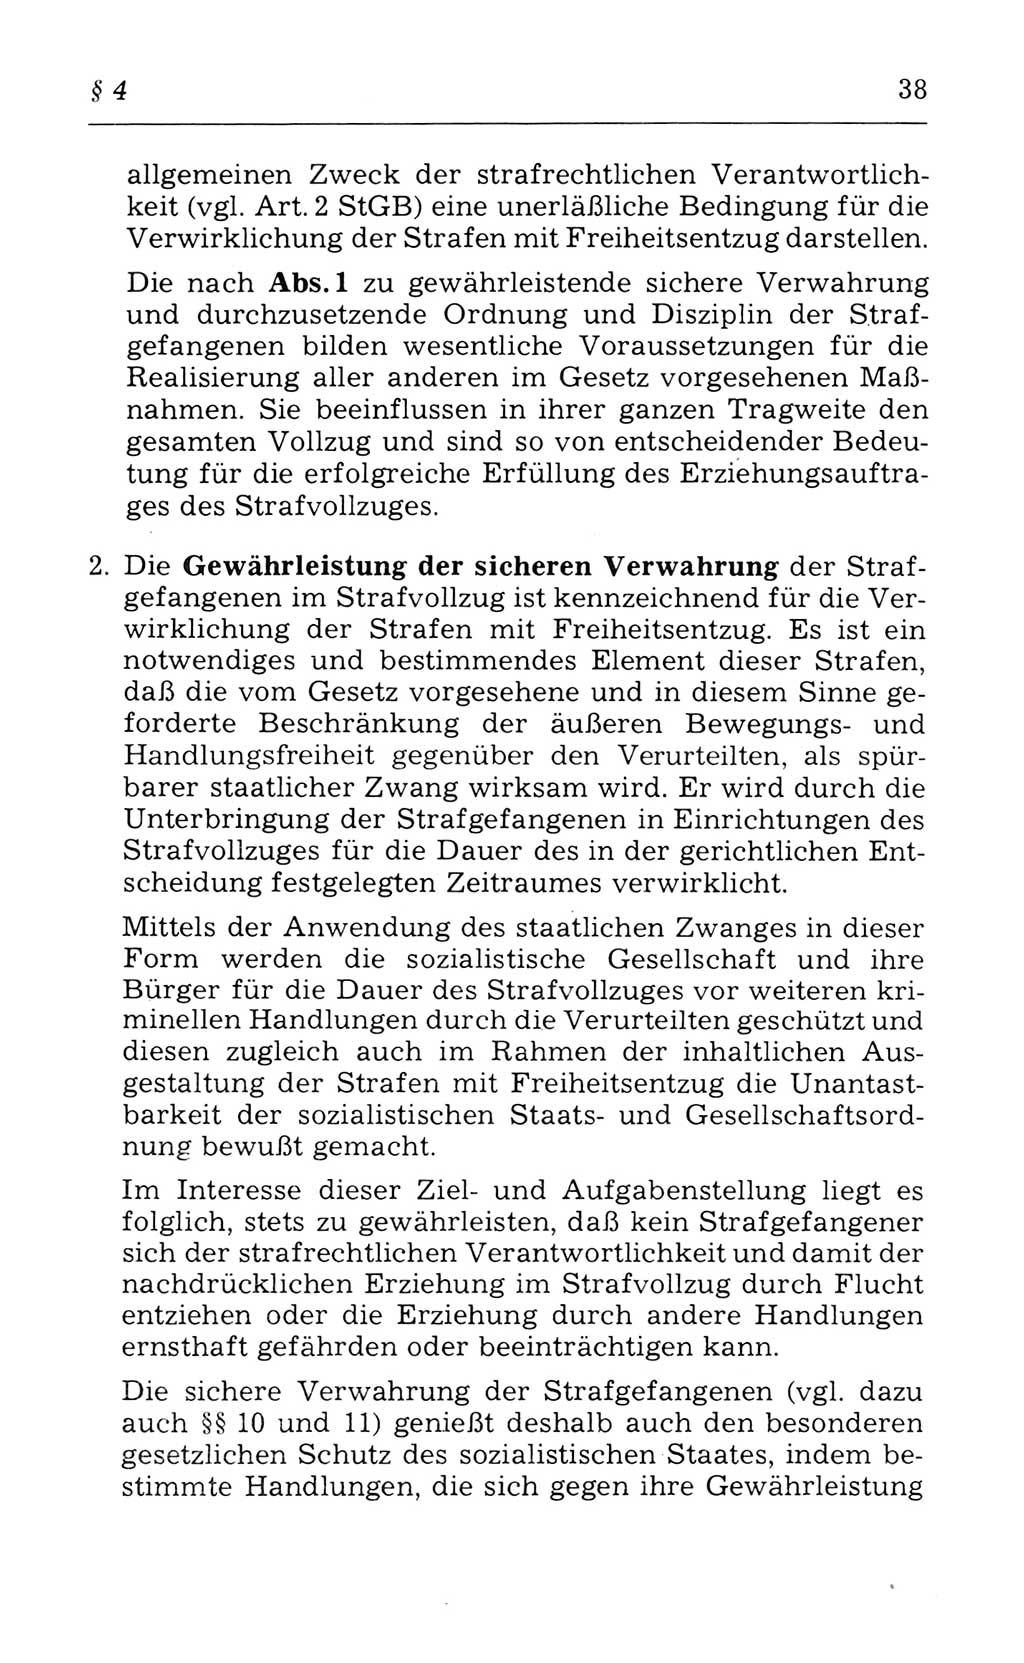 Kommentar zum Strafvollzugsgesetz [(StVG) Deutsche Demokratische Republik (DDR)] 1980, Seite 38 (Komm. StVG DDR 1980, S. 38)